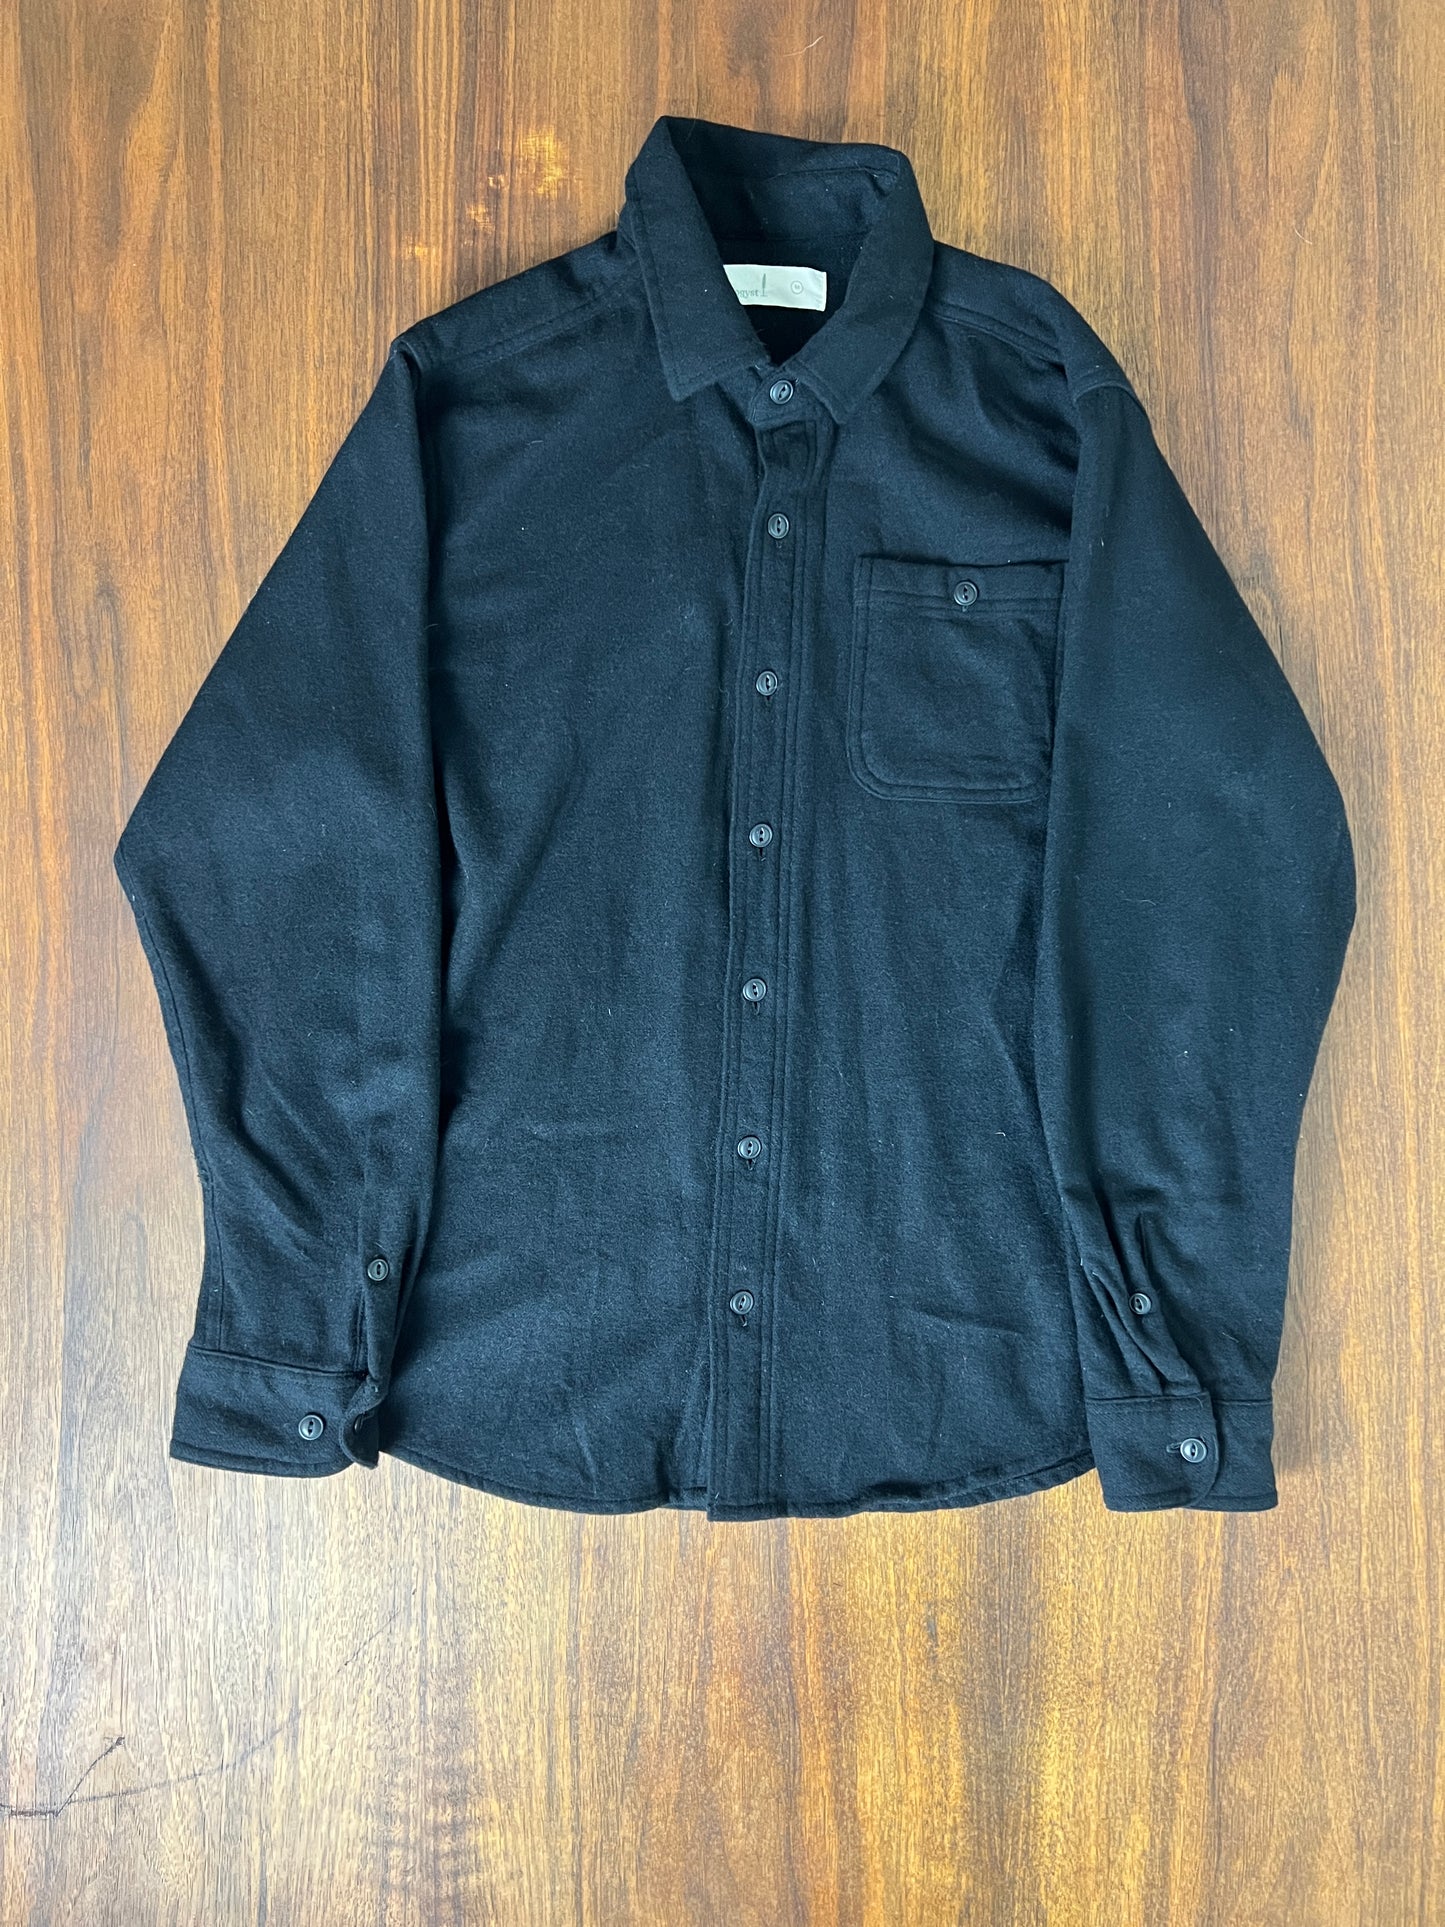 The Black Wool Shirt